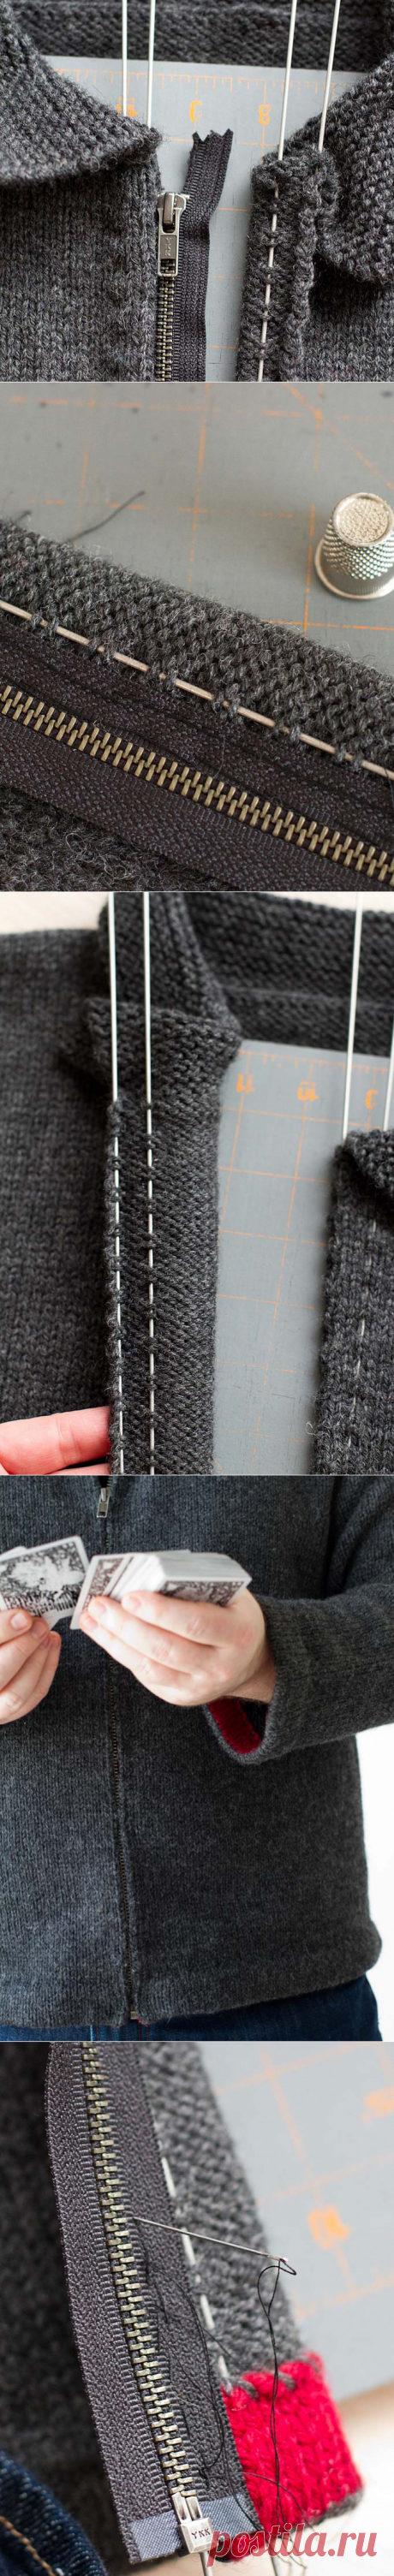 Как вшить молнию в вязаное изделие: простой и оригинальный способ